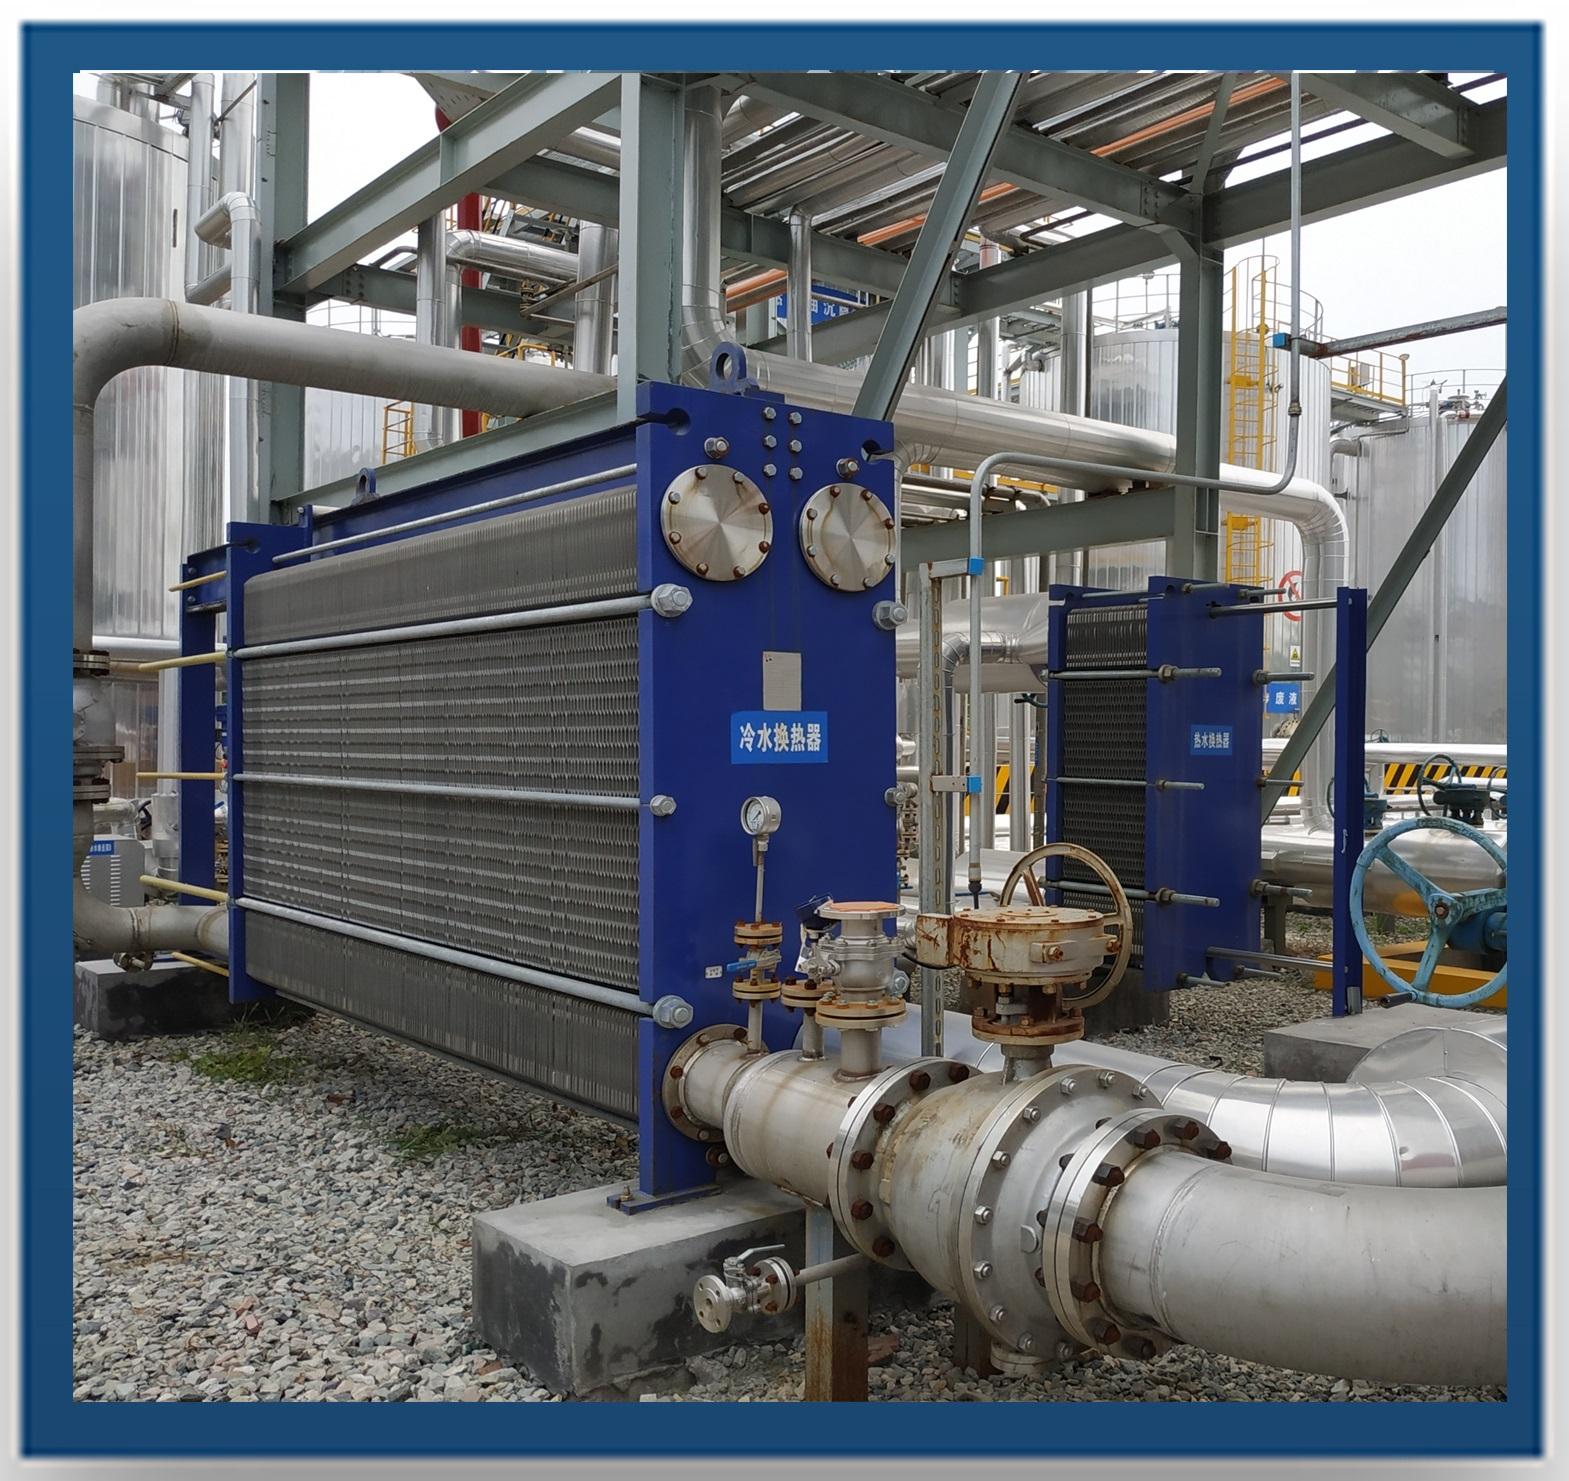 普瑞普勒 加热、冷却、冷凝等各类冷热交换装置 德国杜尔公司危险固废物处置项目设备